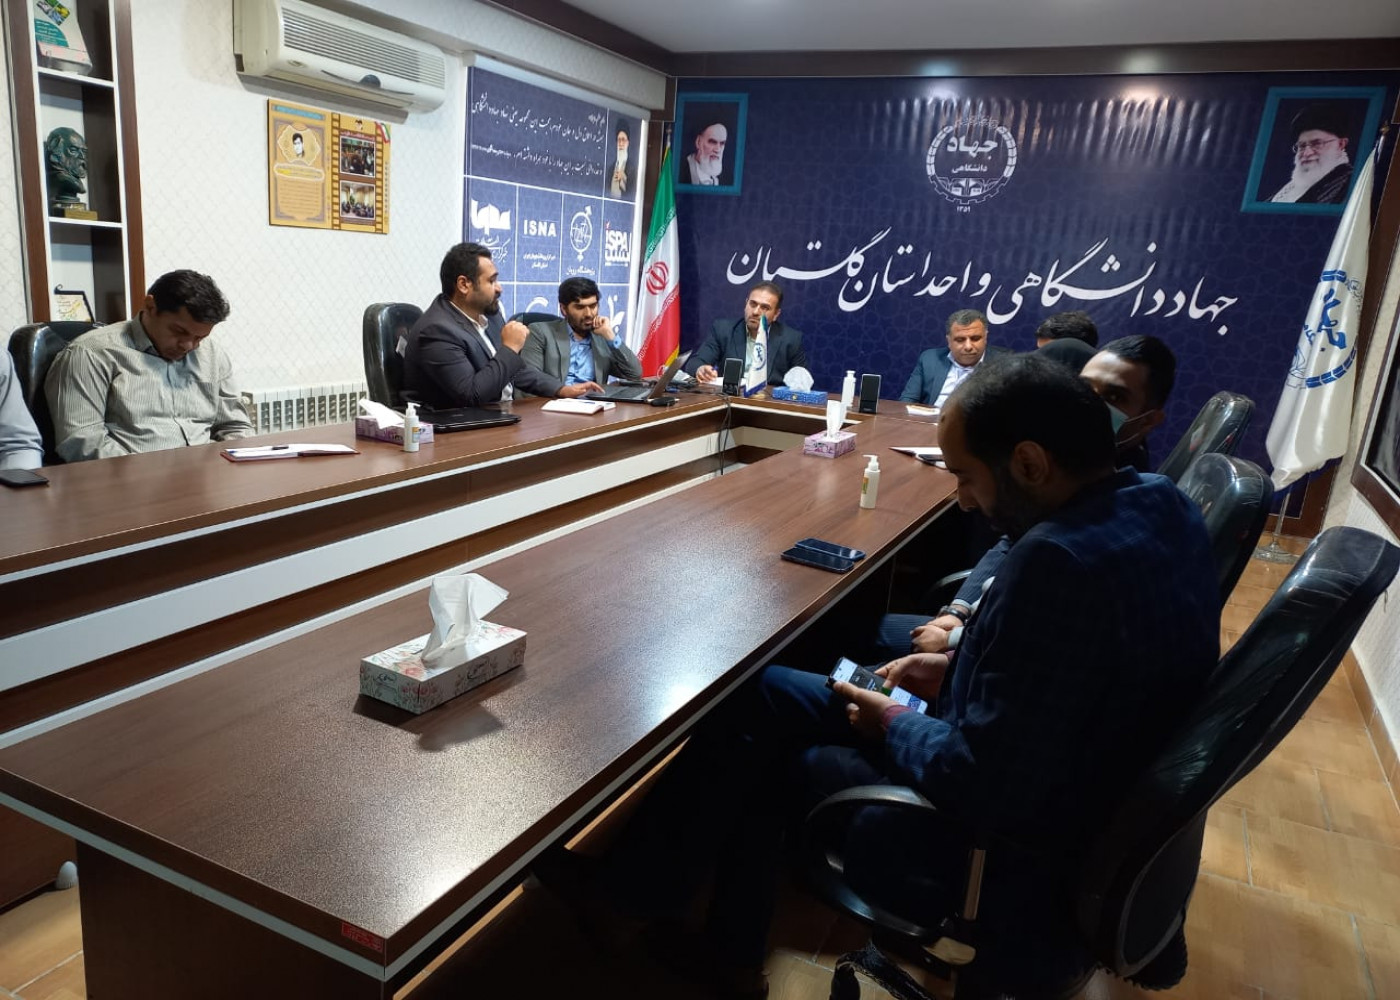 مدیر کل تعاون ،کار و رفاه اجتماعی استان گلستان به همراه معاونین این اداره کل در جریان روند طرح مشاغل خانگی استان گلستان قرار گرفتند.